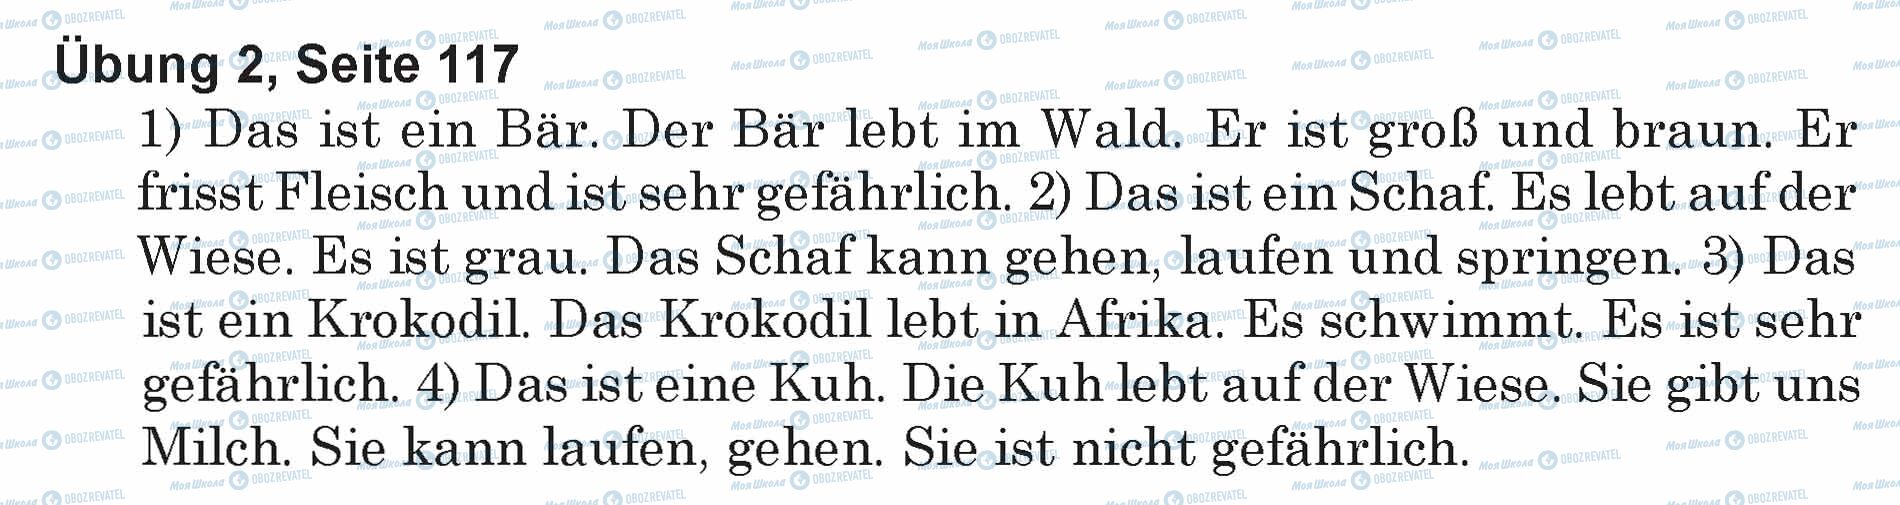 ГДЗ Німецька мова 5 клас сторінка Ubung 2, Seite 117